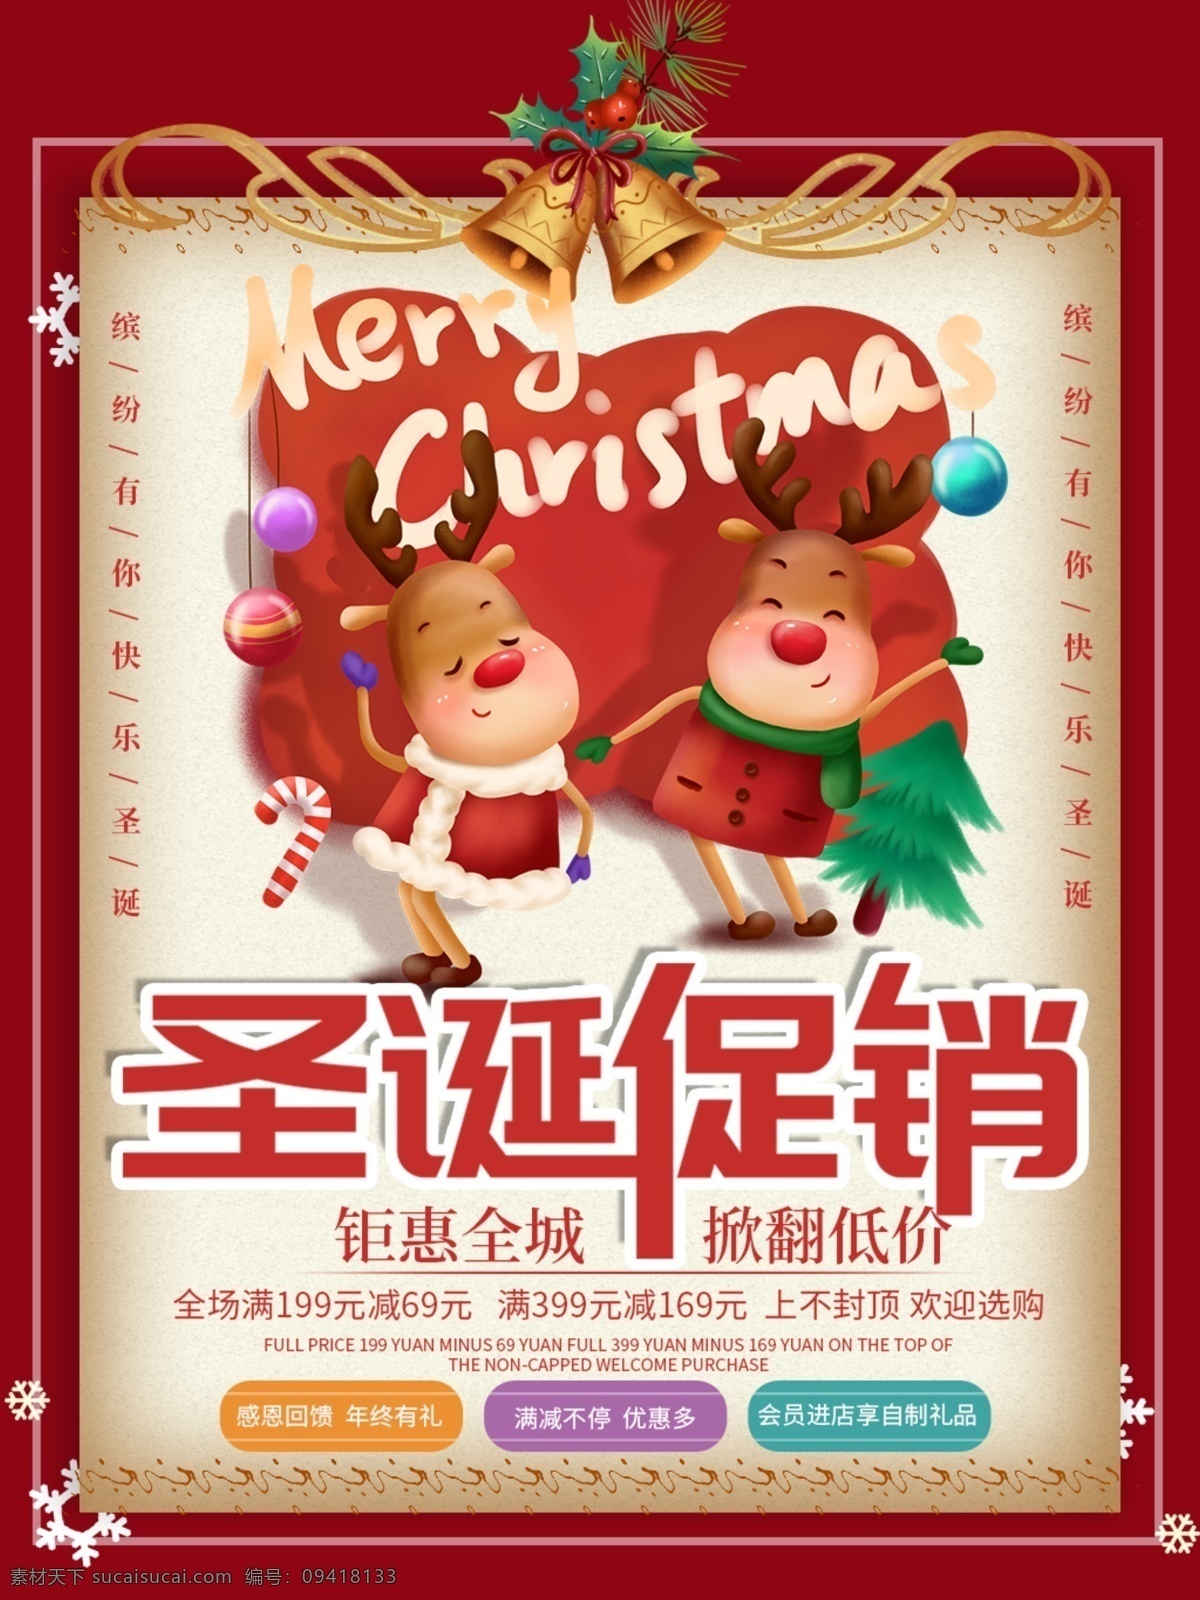 圣诞节 促销 海报 圣诞促销 节日促销 全城钜惠 活动有礼 圣诞快乐